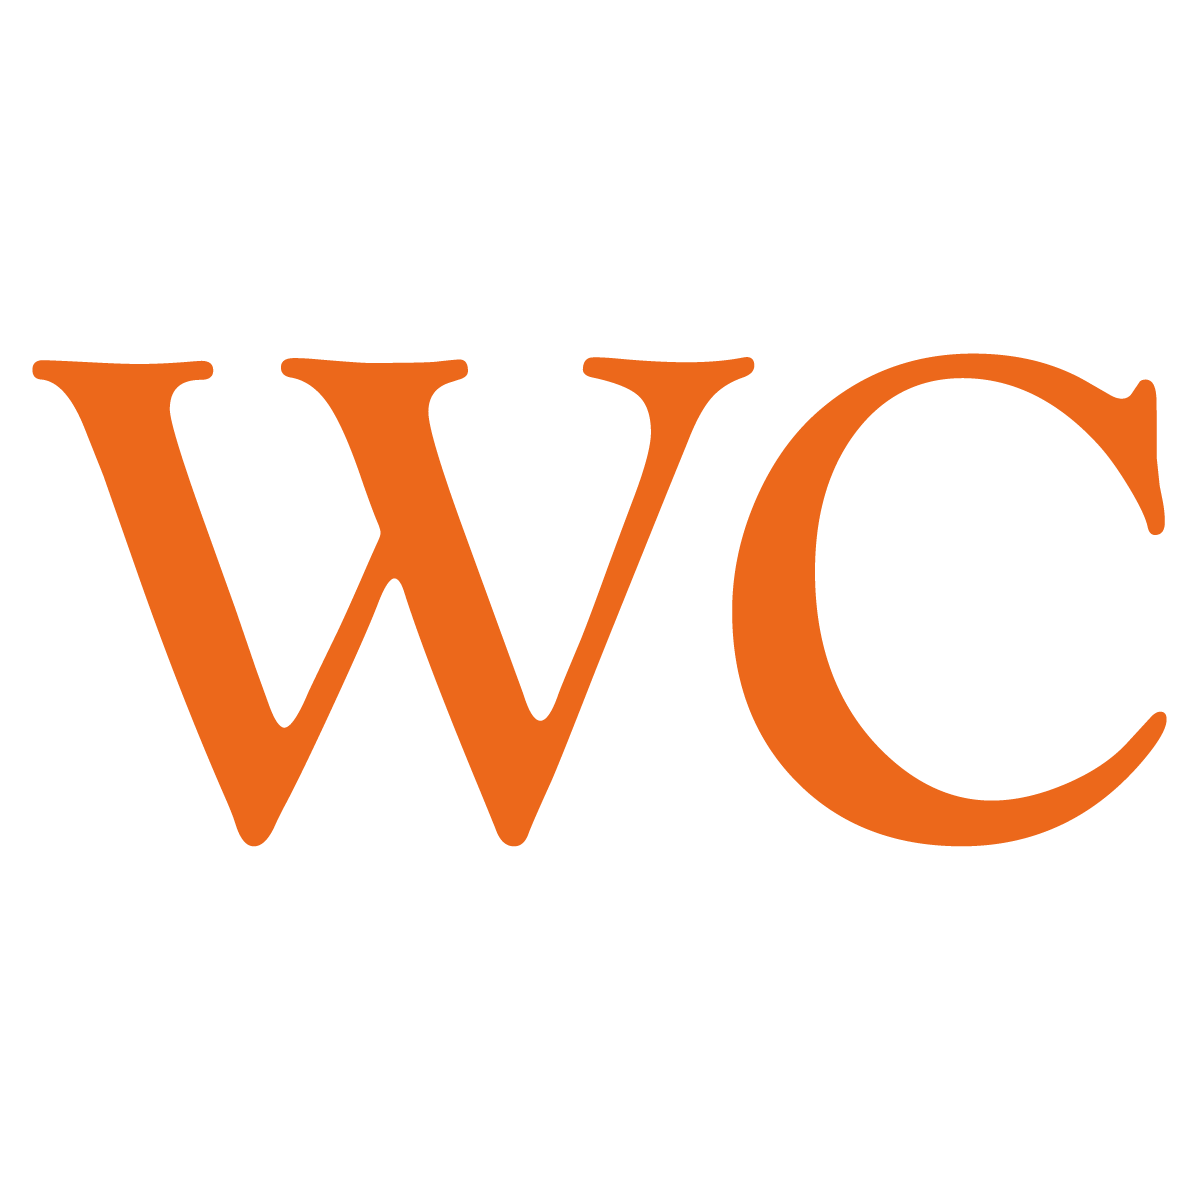 WC - Vinyltext - Orange